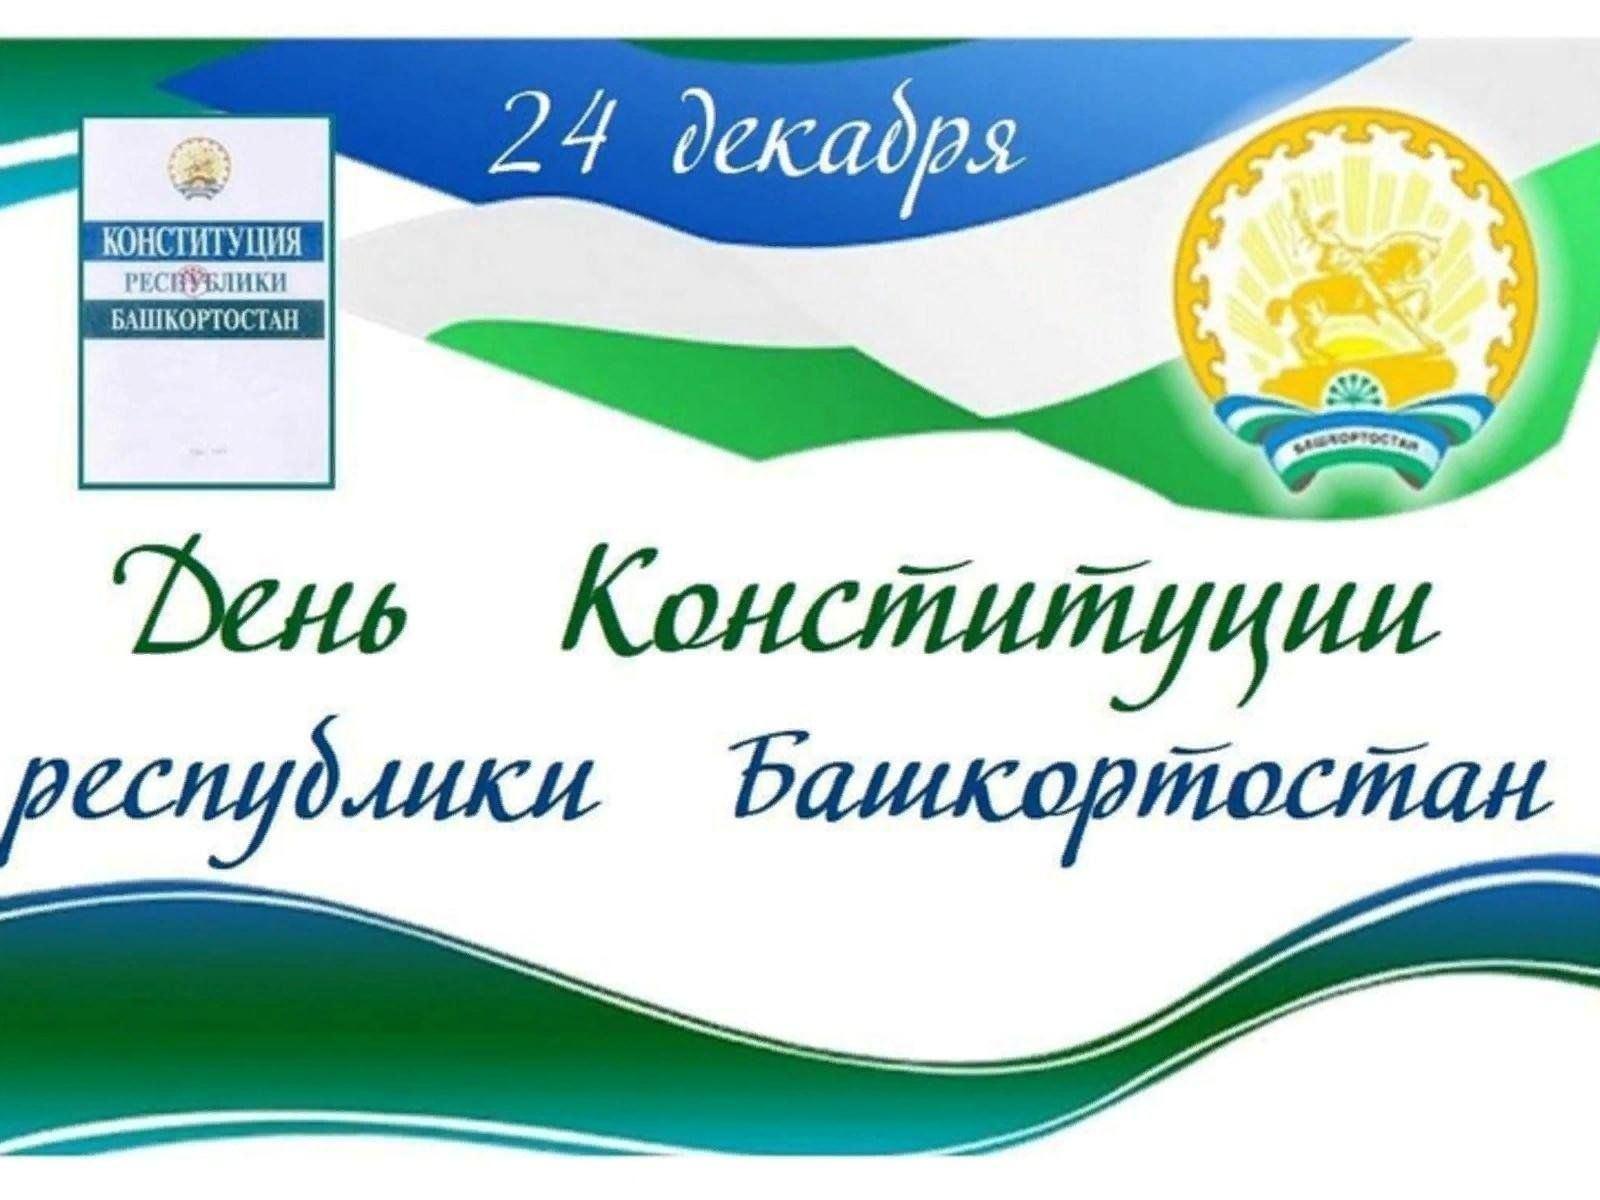 Конституция республики башкортостан была принята